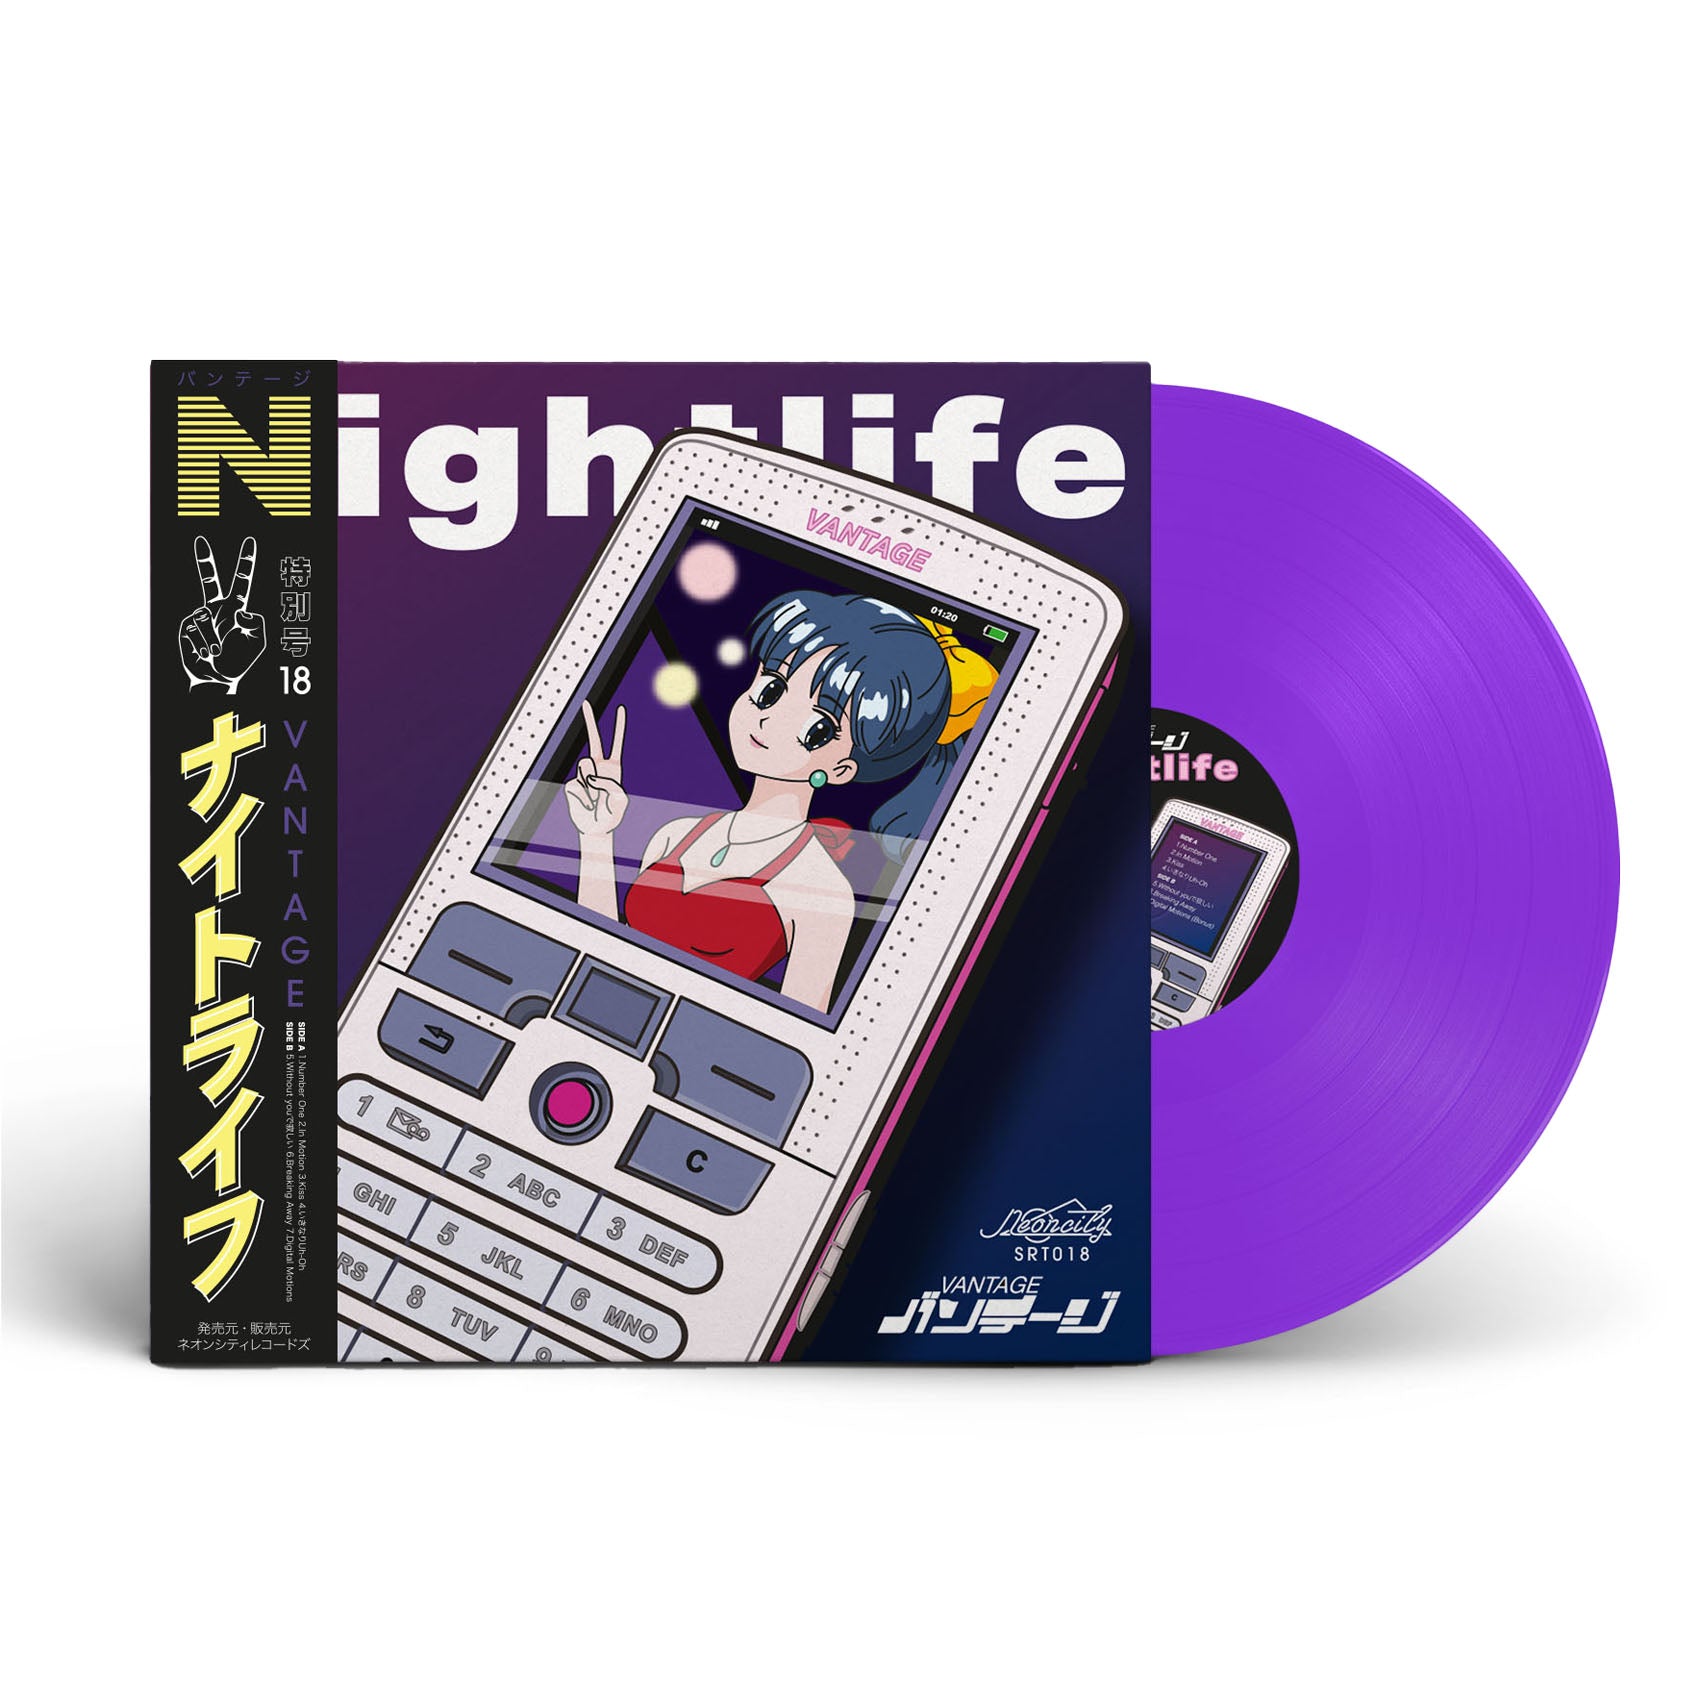 Vantage - 'Nightlife' Limited Edition 12" Vinyl - Neoncity Records